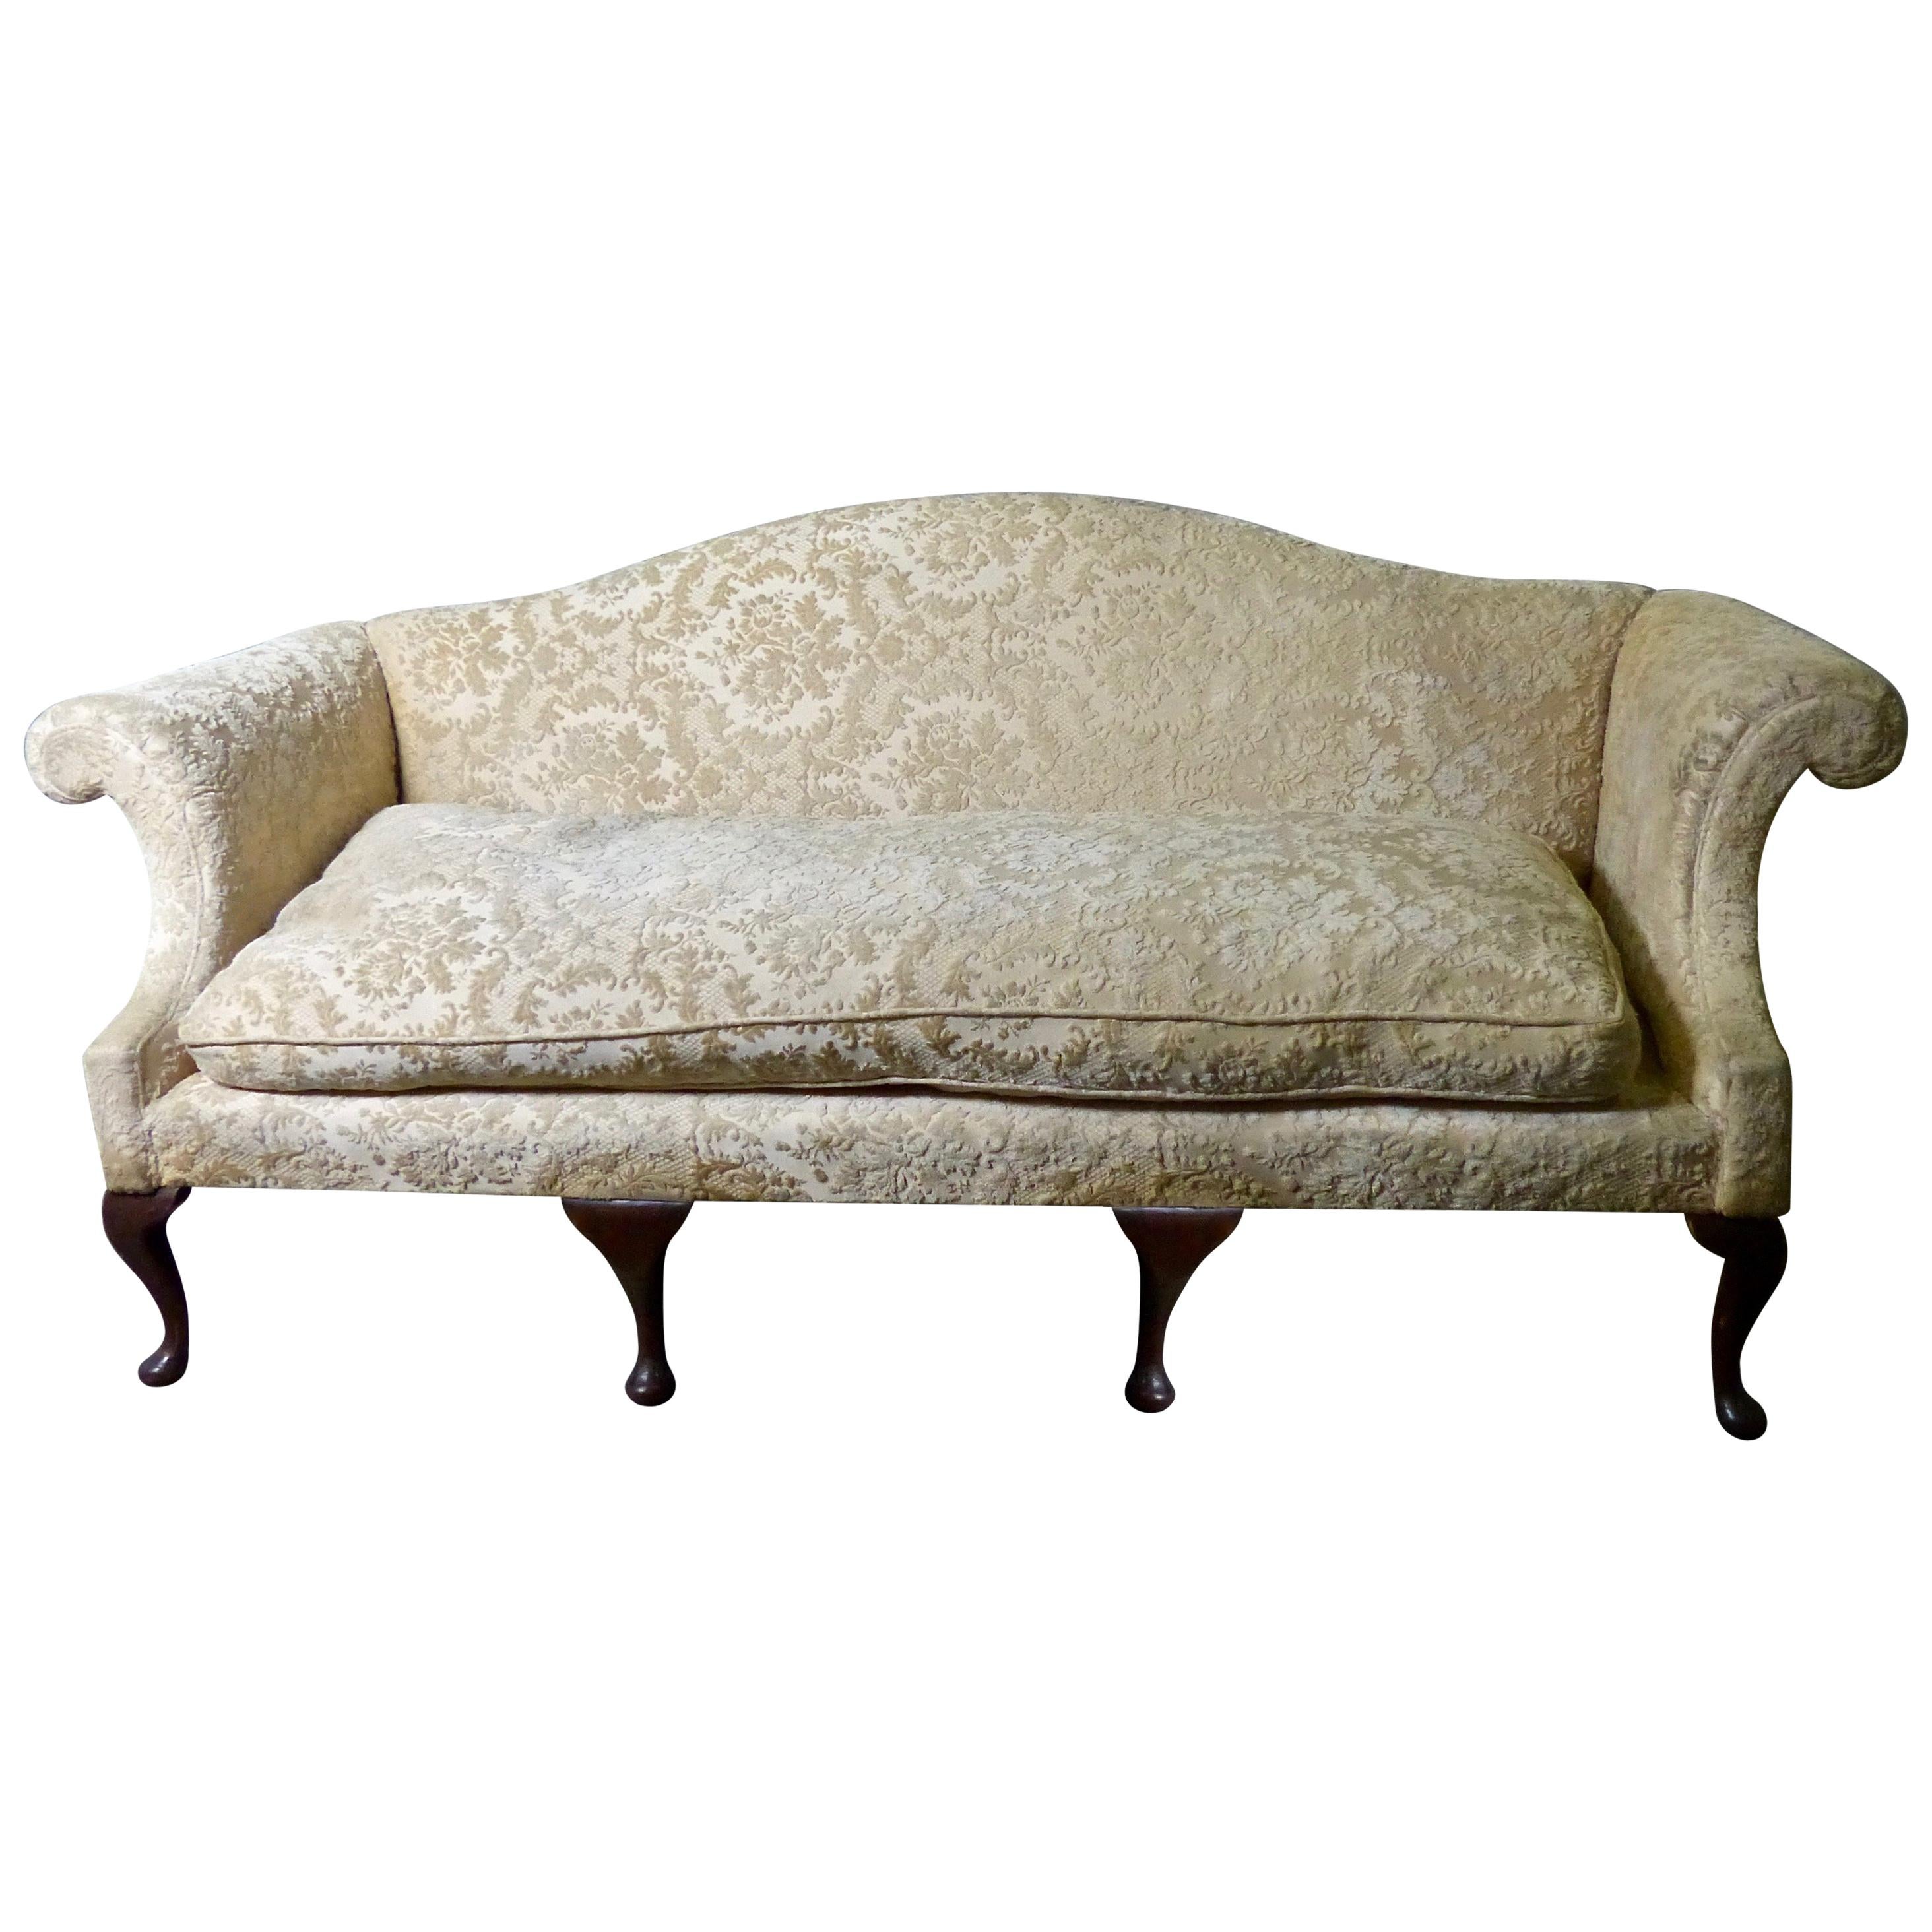 1920s Chippendale Revival Camel-Back Sofa in Cut Velvet